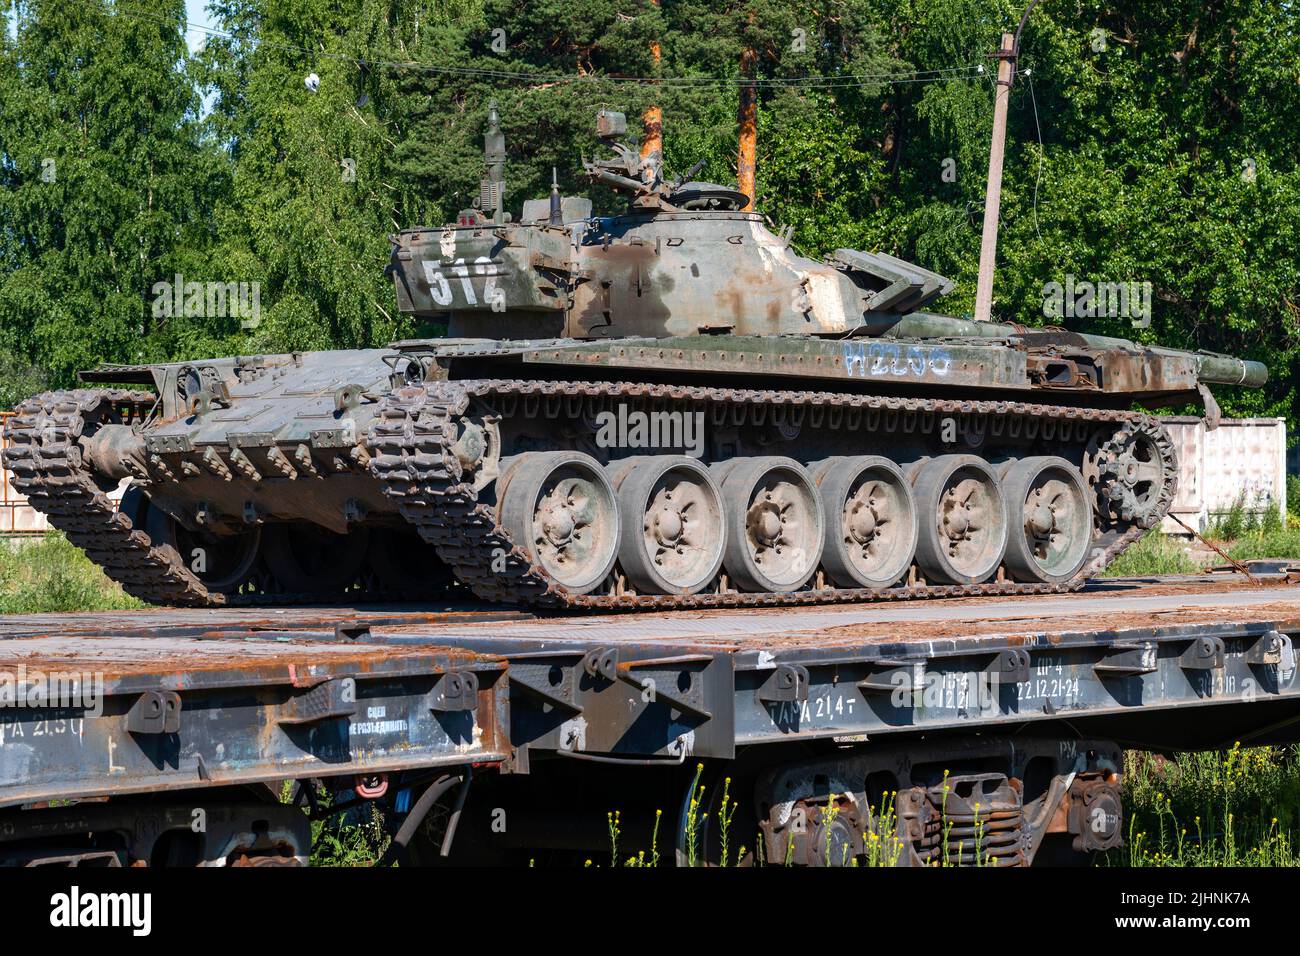 REGIÓN DE LENINGRADO, RUSIA - 02 DE JULIO de 2022: Antiguo tanque ruso en una plataforma ferroviaria en un soleado día de verano. Transporte de equipo militar Foto de stock